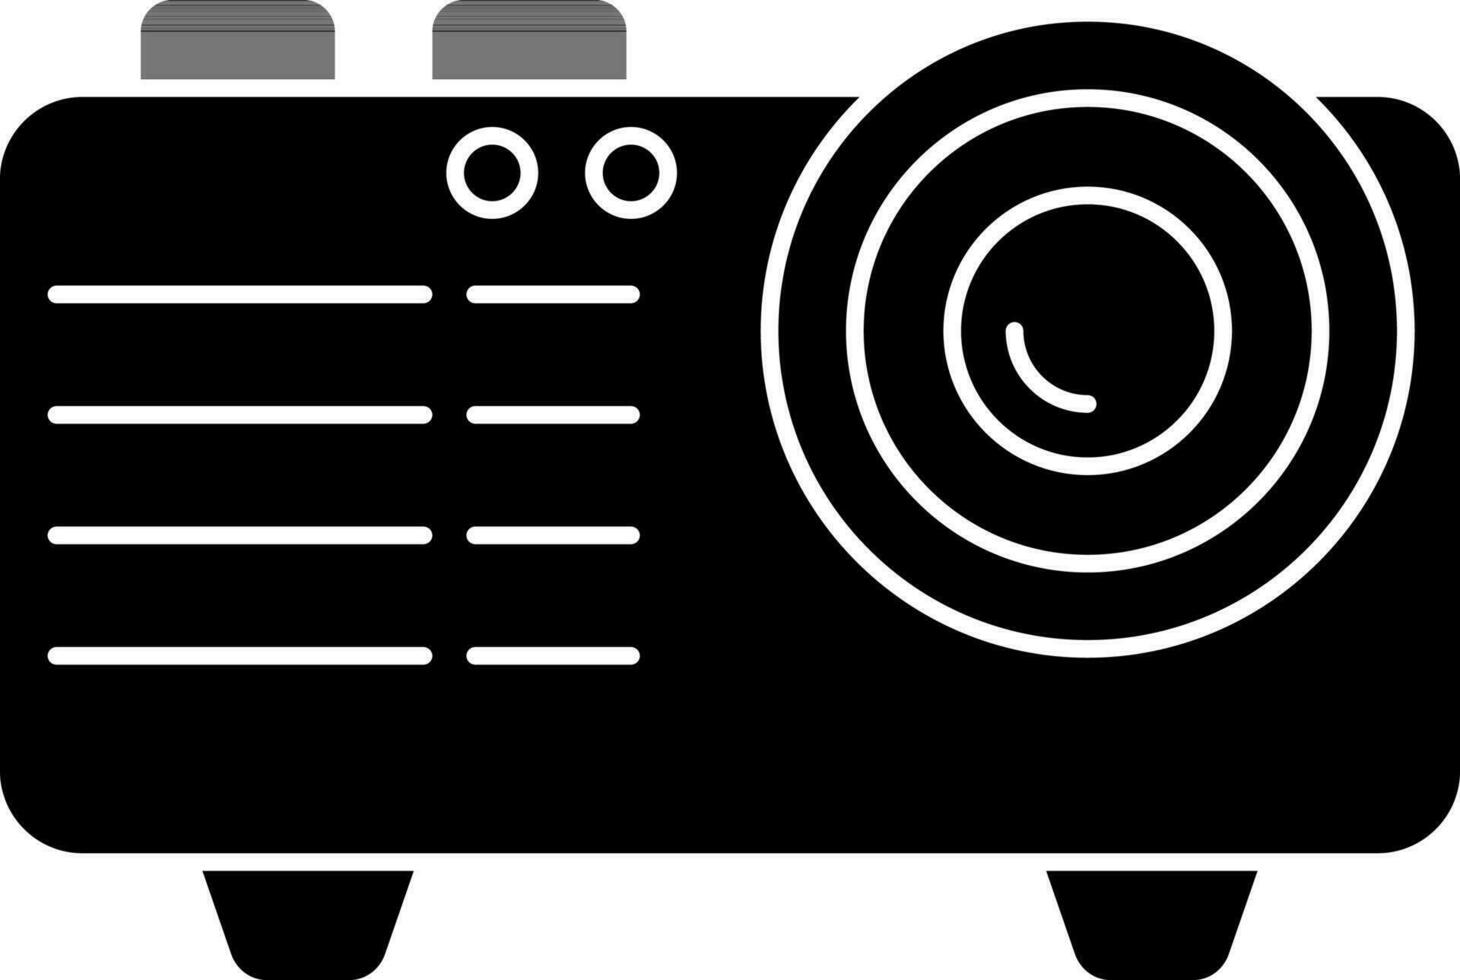 Glyph icon or symbol of projector. vector